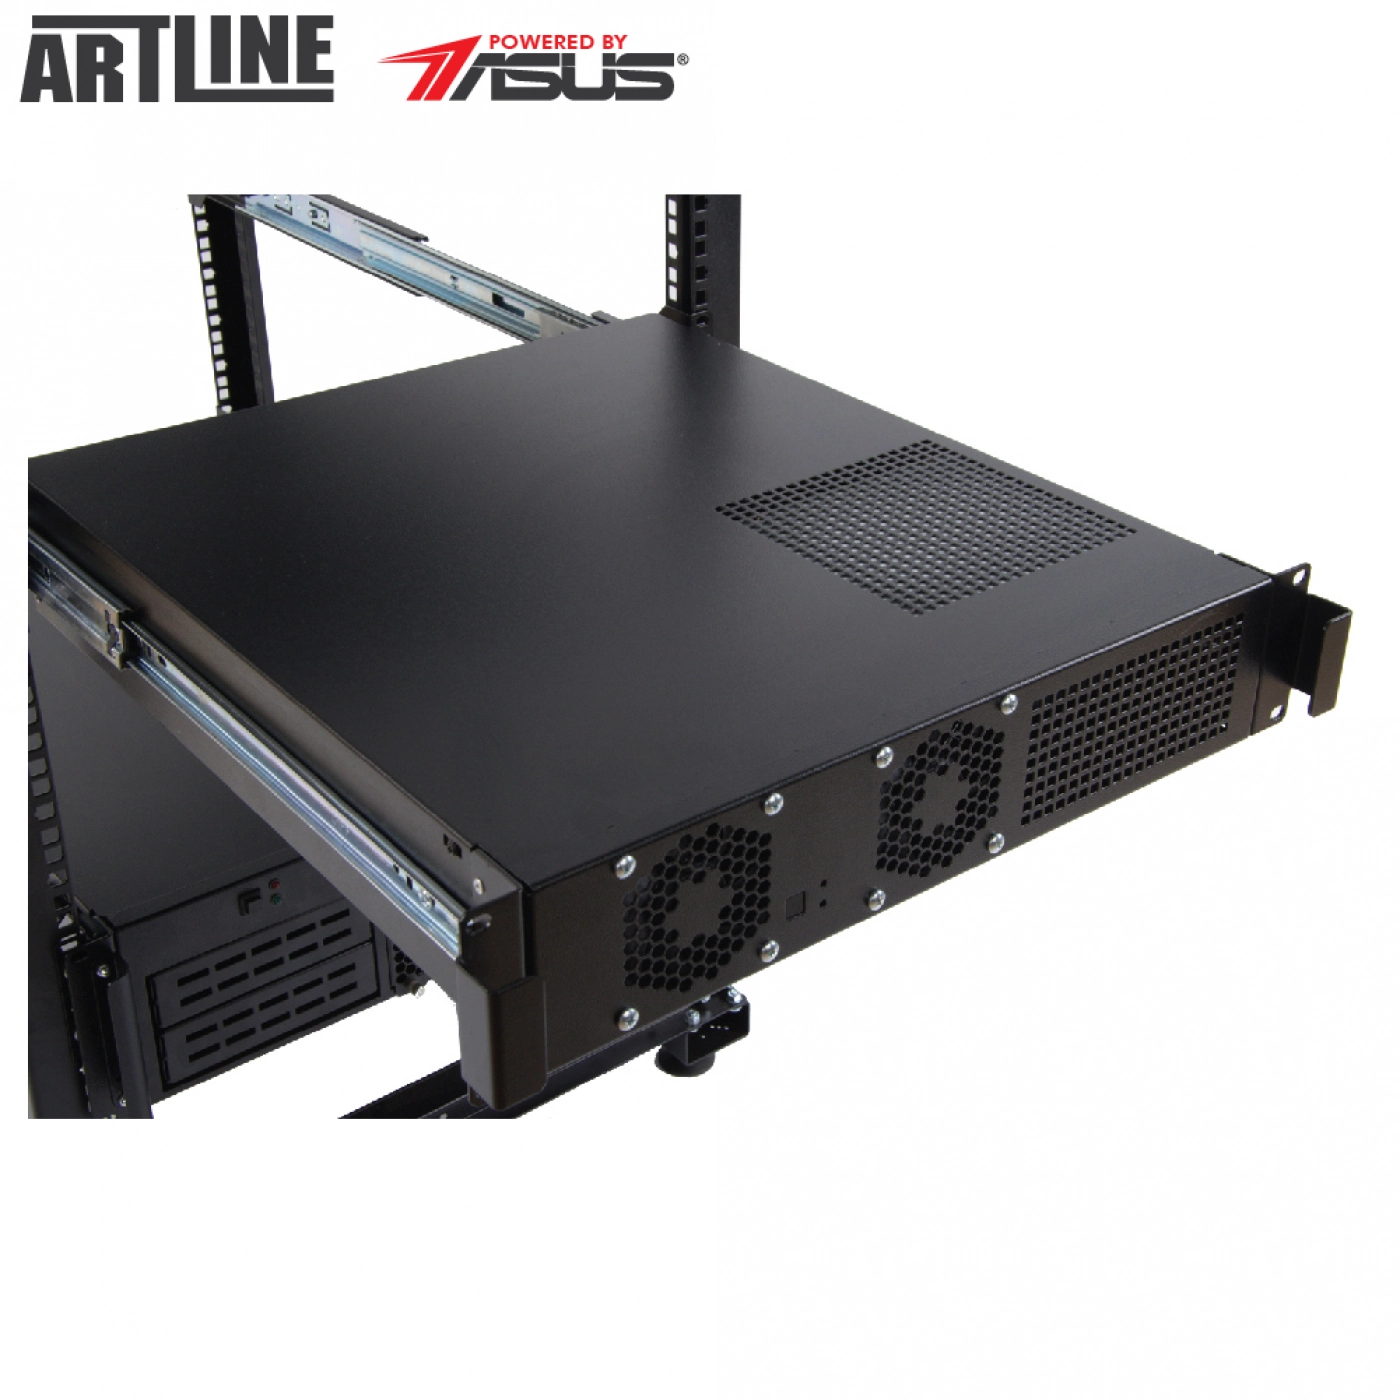 Купить Сервер ARTLINE Business R77v12 - фото 6